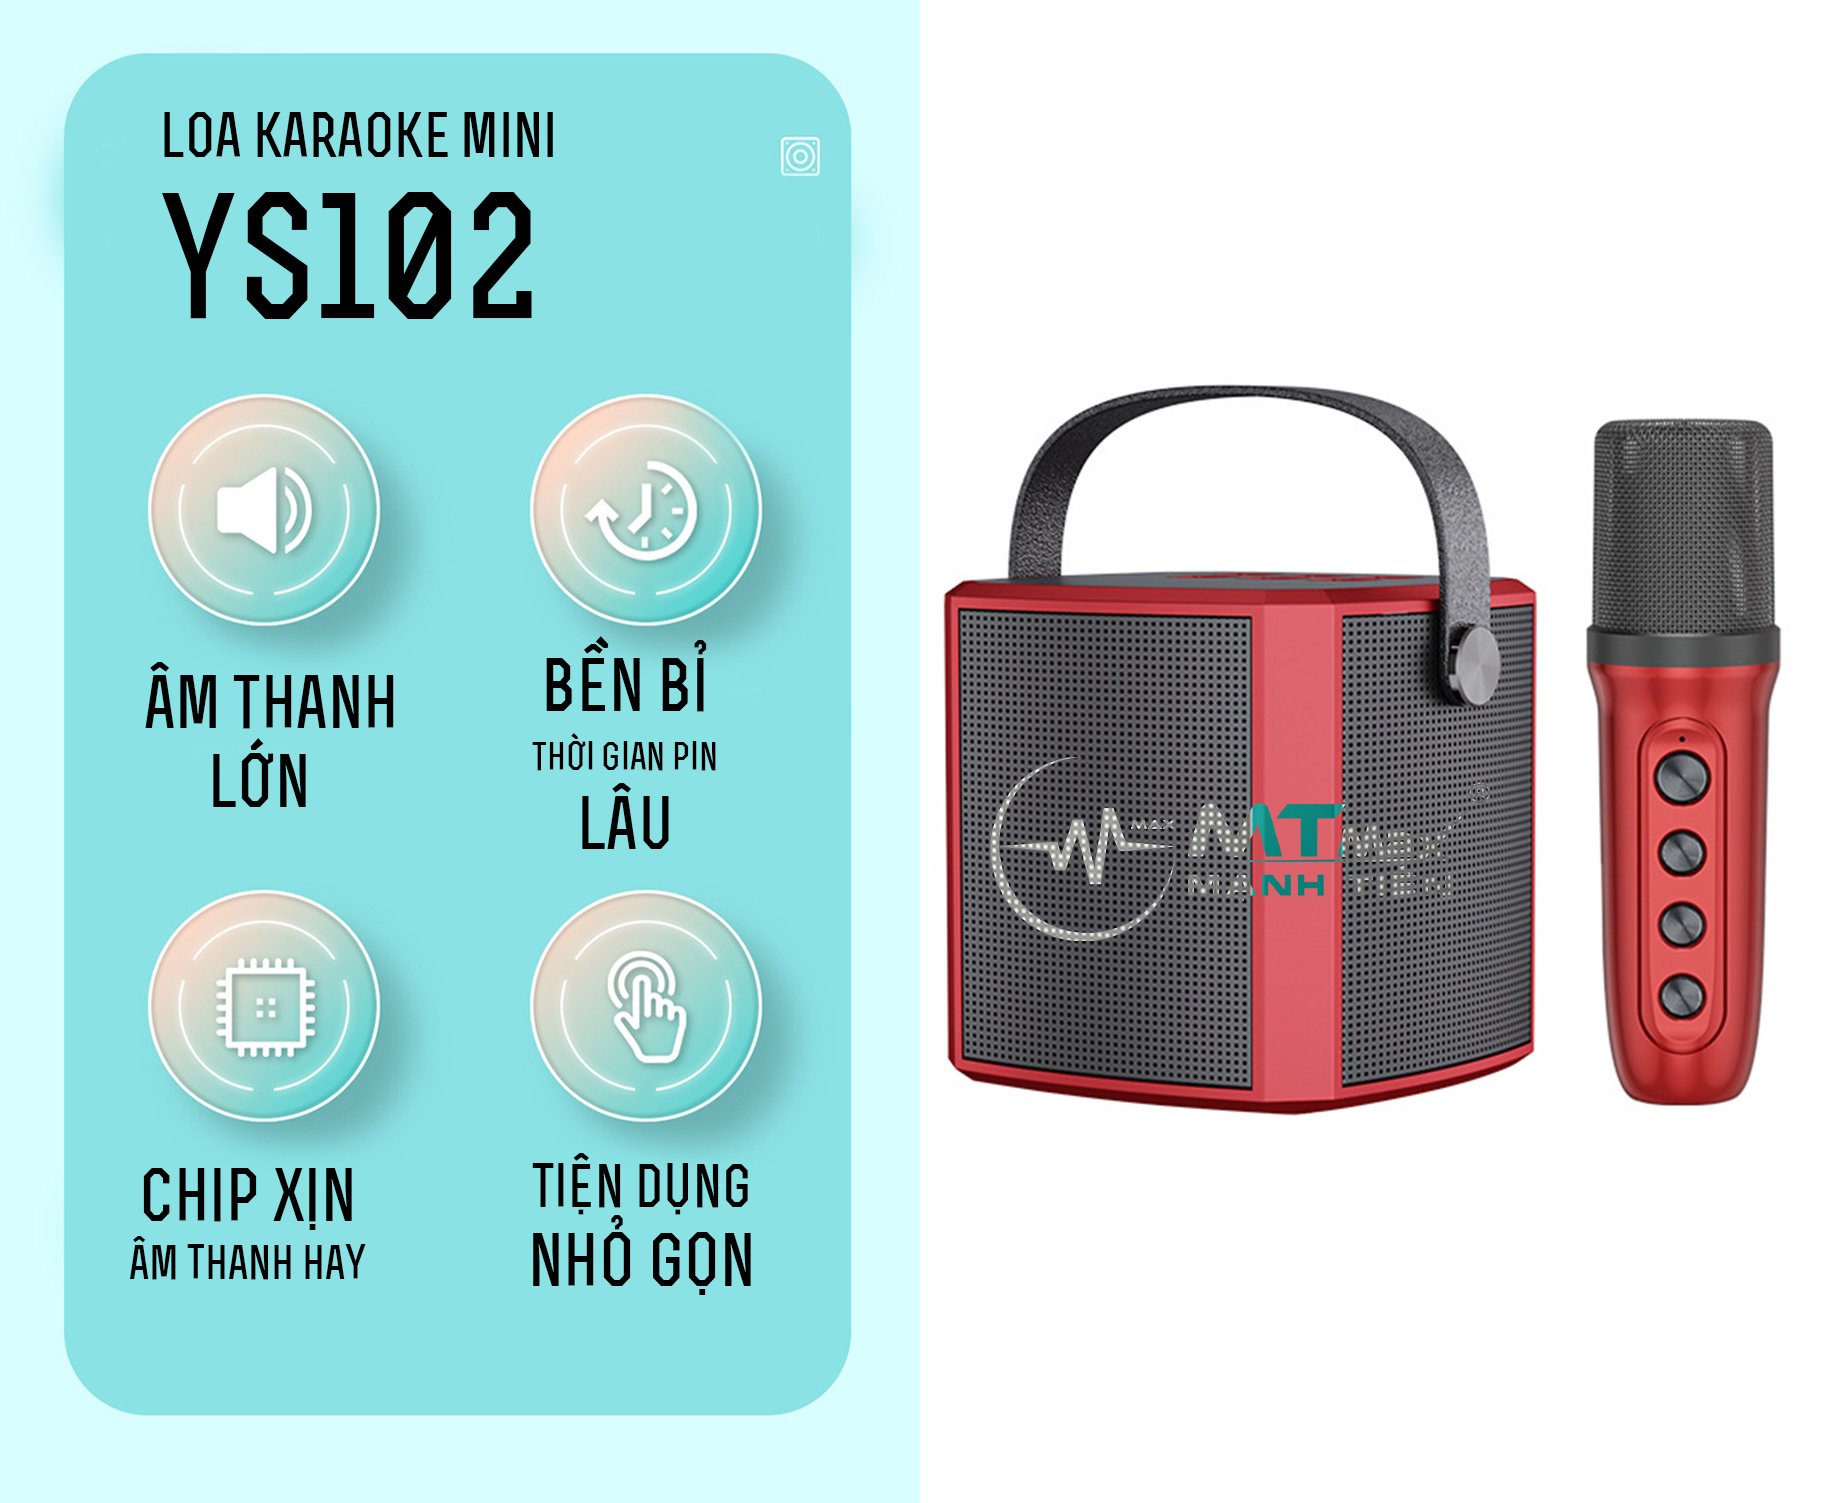 Loa bluetooth YS102 mang phong cách hiện đại vẻ ngoài tinh tế di động mini cầm tay riêng. Cùng với chất liệu vỏ được làm bằng nhữa ABS cao cấp, an toàn không độc hại. Thích hợp di chuyển, nghe nhạc karaoke gia đình, du lịch.